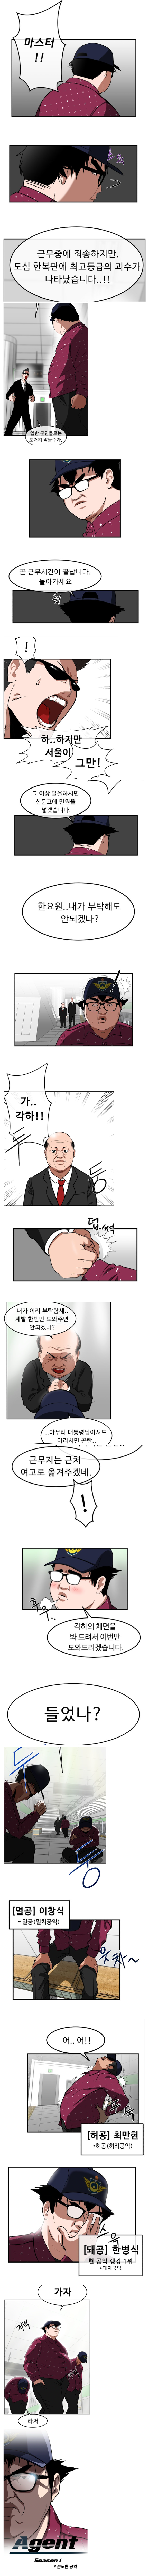 에이전트-K. 만화